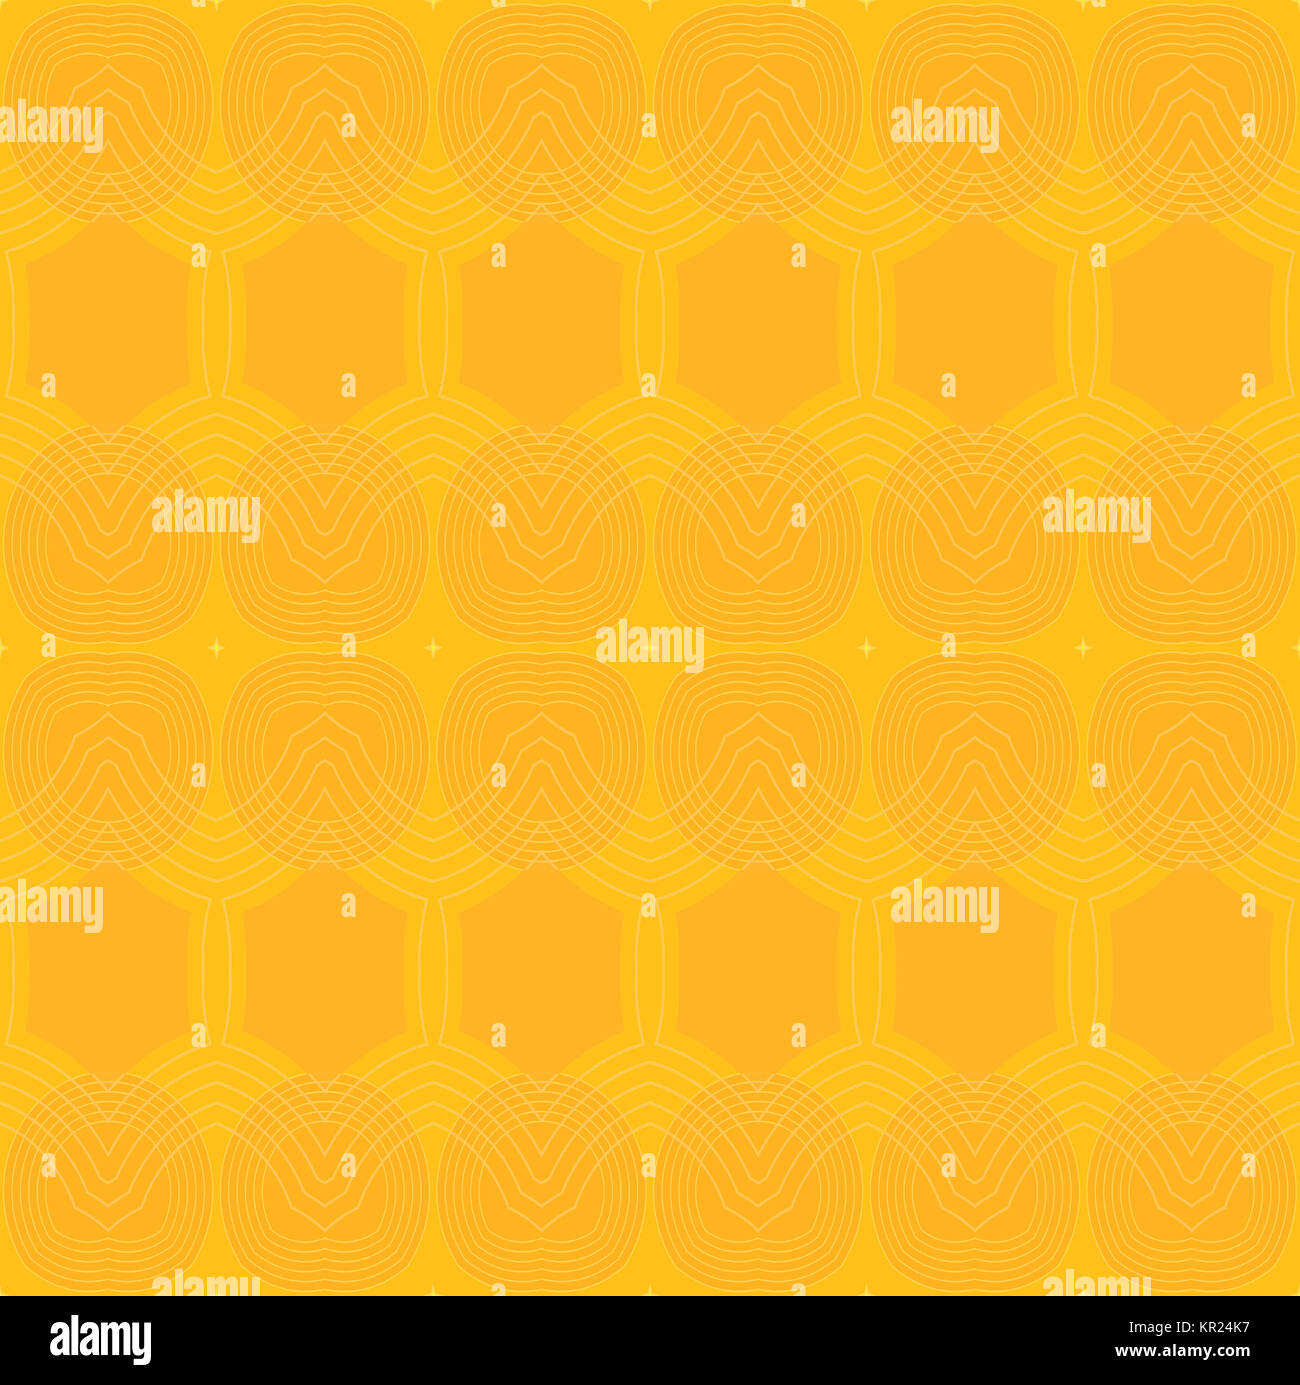 Geométrica abstracta fondo liso. Seamless elipses y patrón hexagonal en amarillo brillante y naranja con contornos. Foto de stock